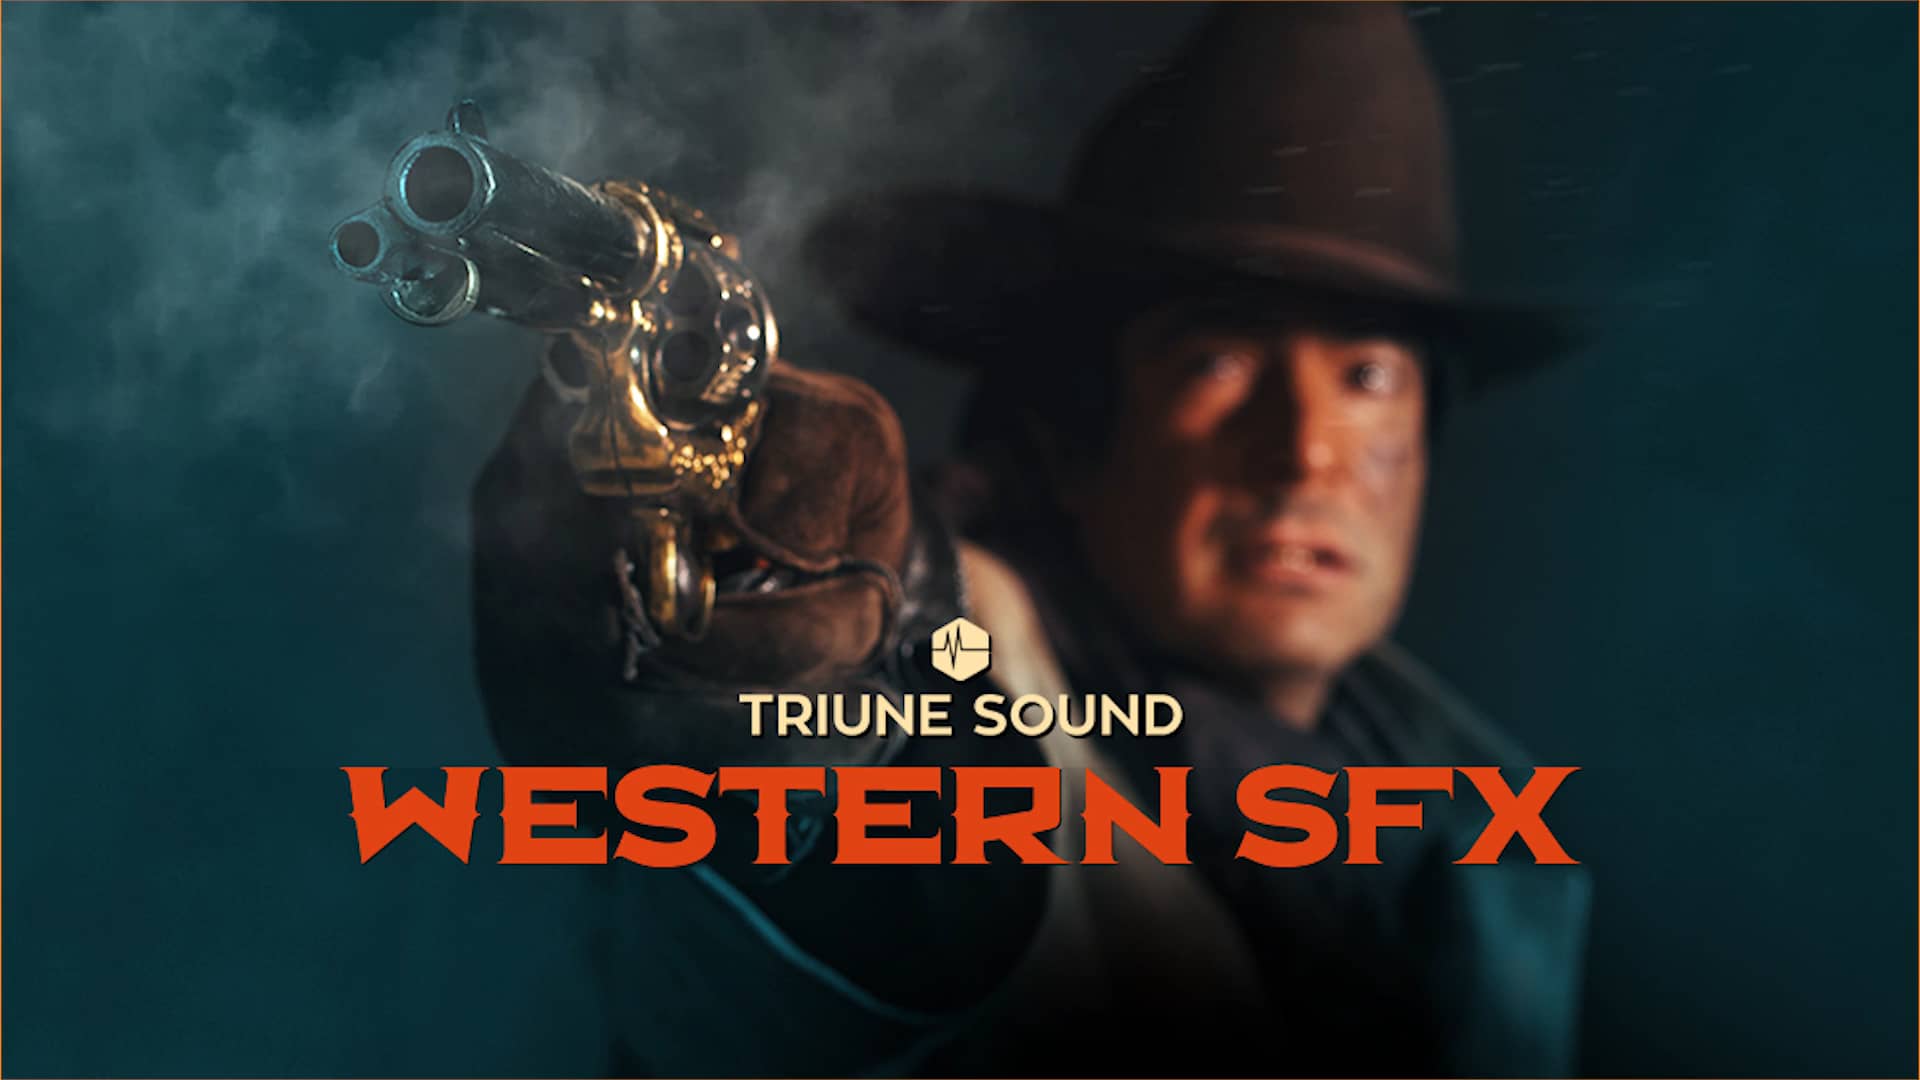 796种经典西部牛仔风格电影马蹄枪声脚步鞭子打击音效合集 Triune Digital – Western Film SFX . 第1张